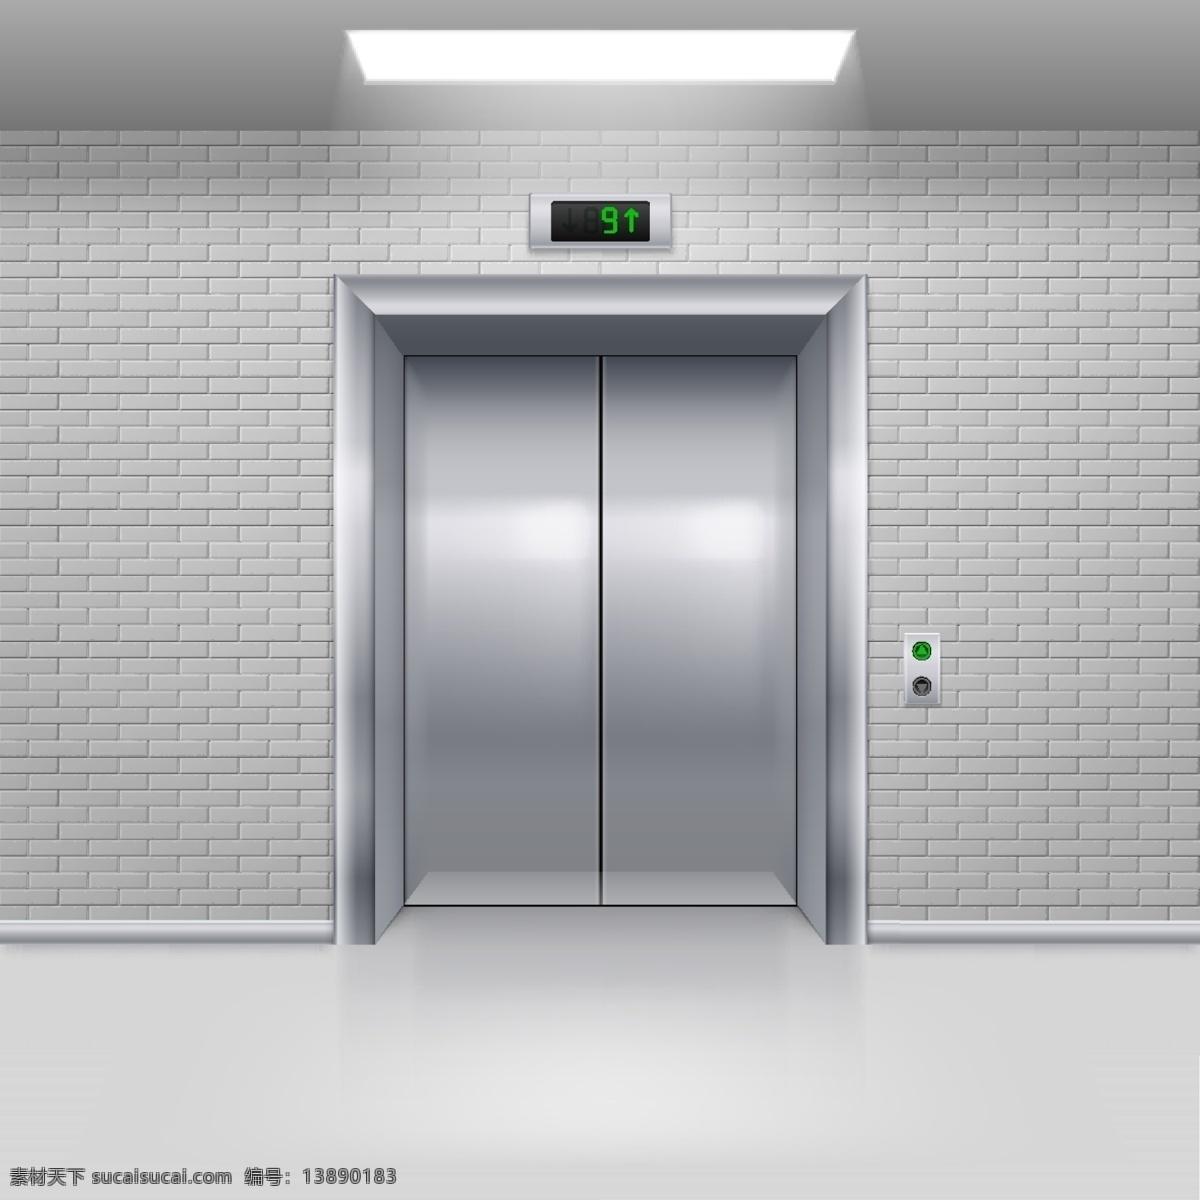 扶手电梯 货梯 科技 商场 商场电梯 电梯效果图 电梯矢量 电梯平面图